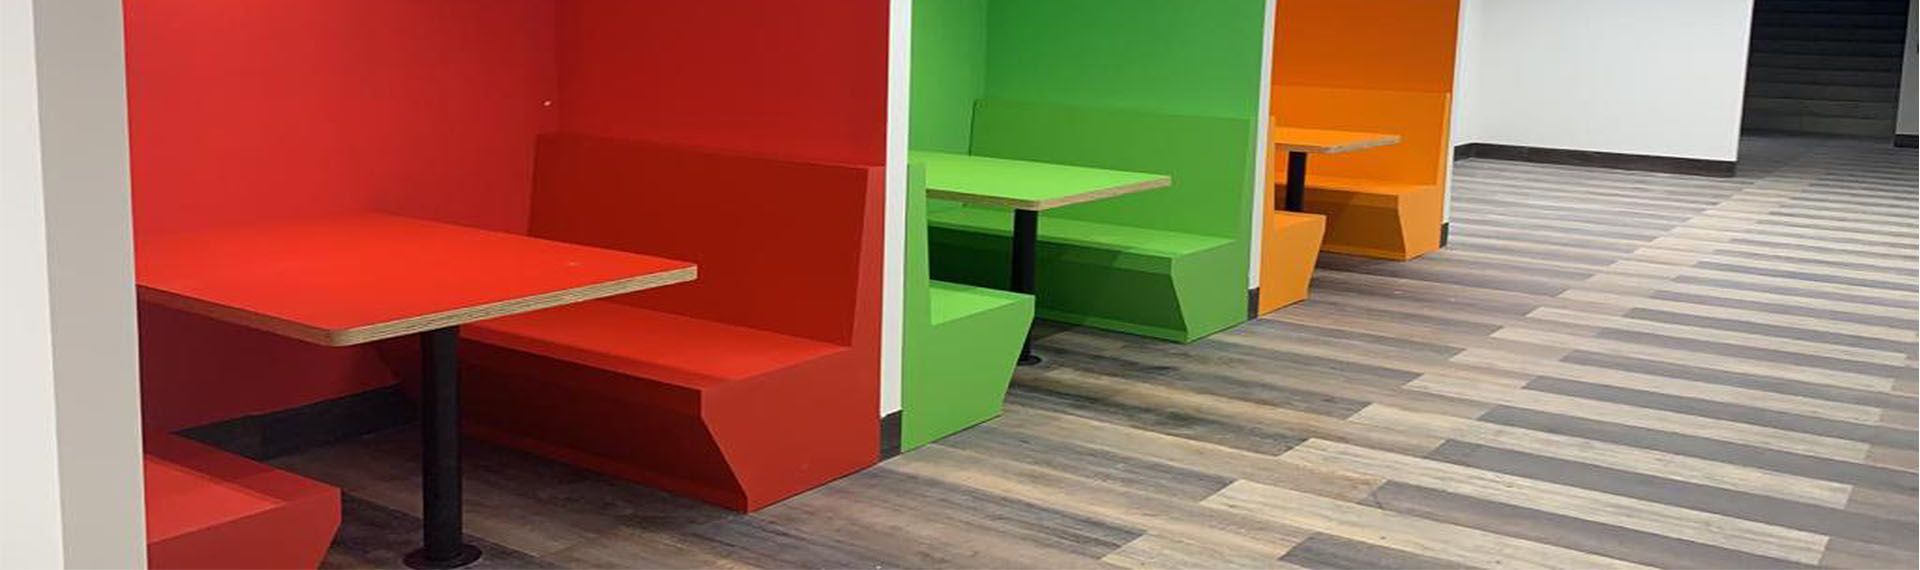 3 nuevas tendencias en pisos de madera: colores oscuros, claros y vibrantes.